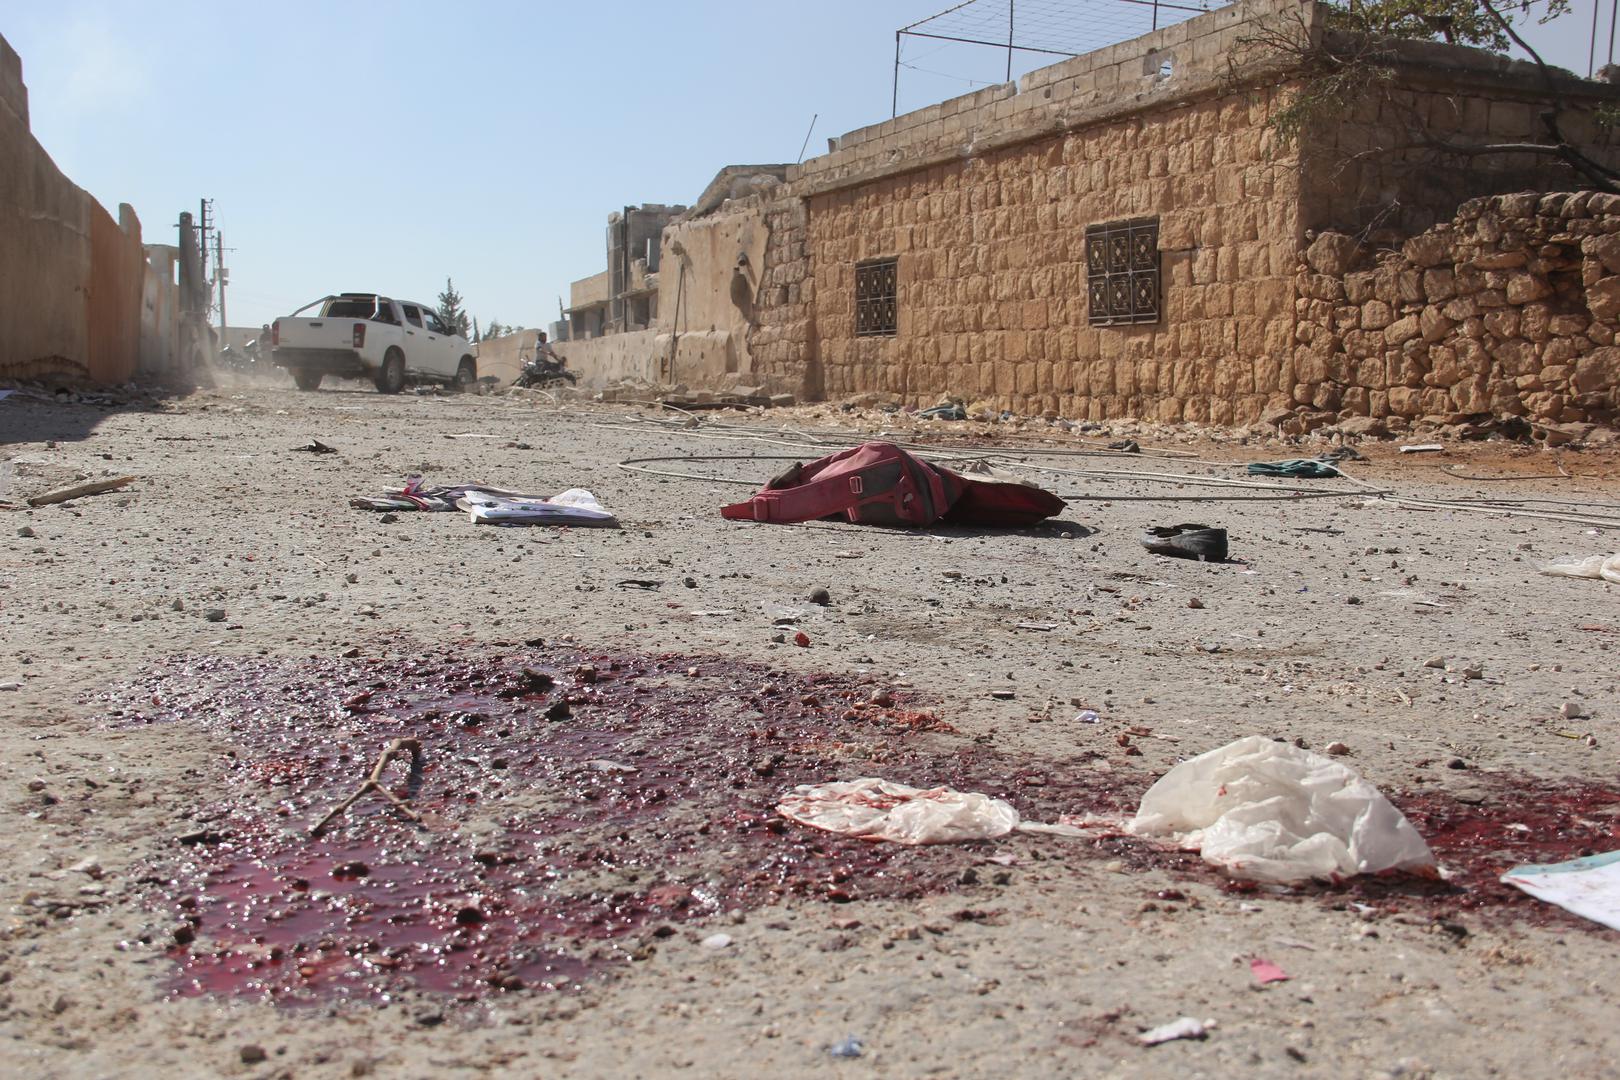 Последствия авиаудара по сирийскому городку Хас 26 октября 2016 г. Десятки гражданских лиц, в том числе дети, погибли в результате взрывов от 7 до 9 бомб преимущественно в районе школьного комплекса и ведущих к нему дорог